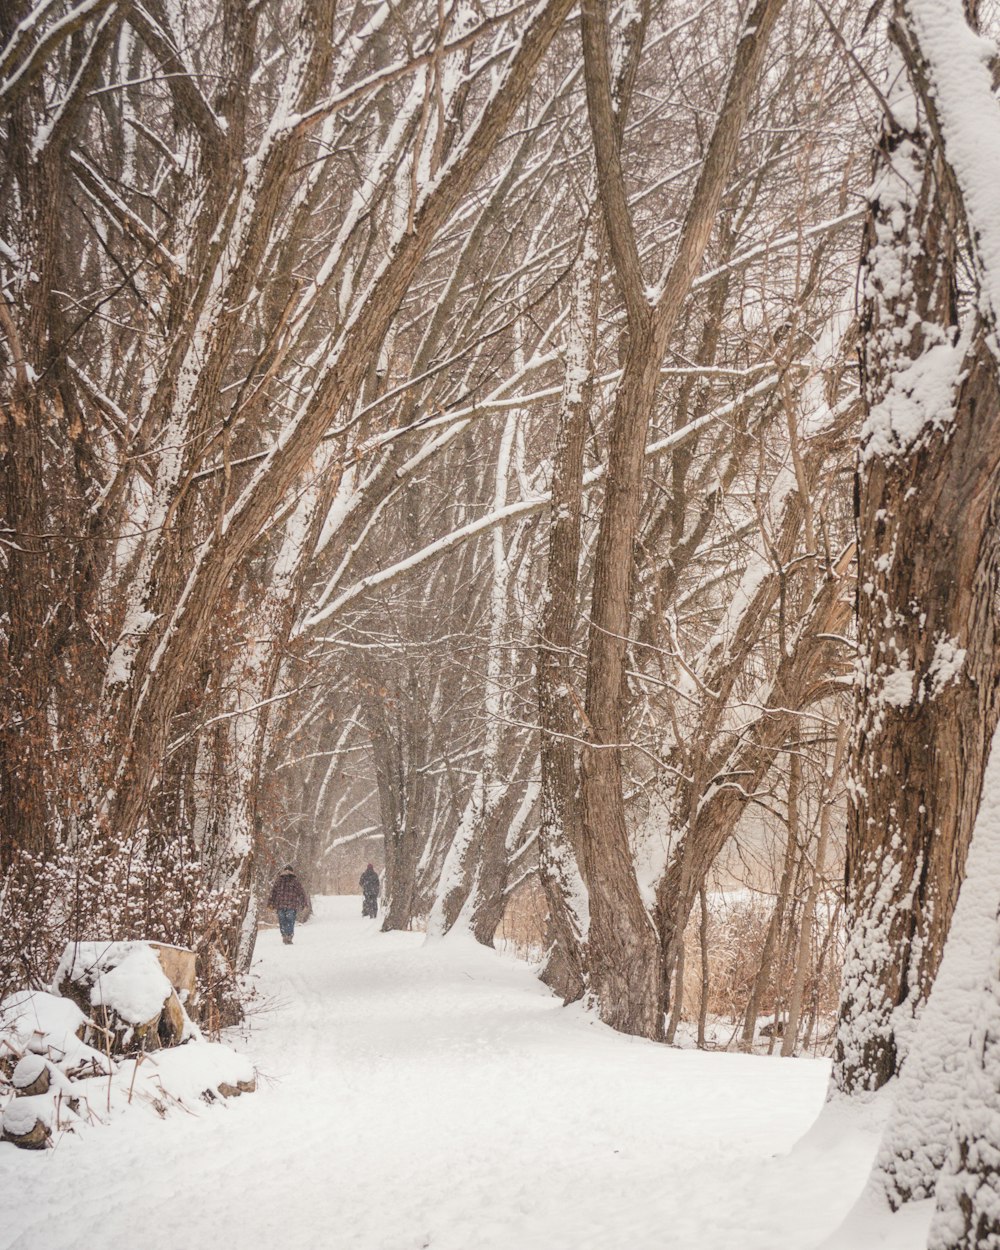 árvores nuas marrons no solo coberto de neve durante o dia